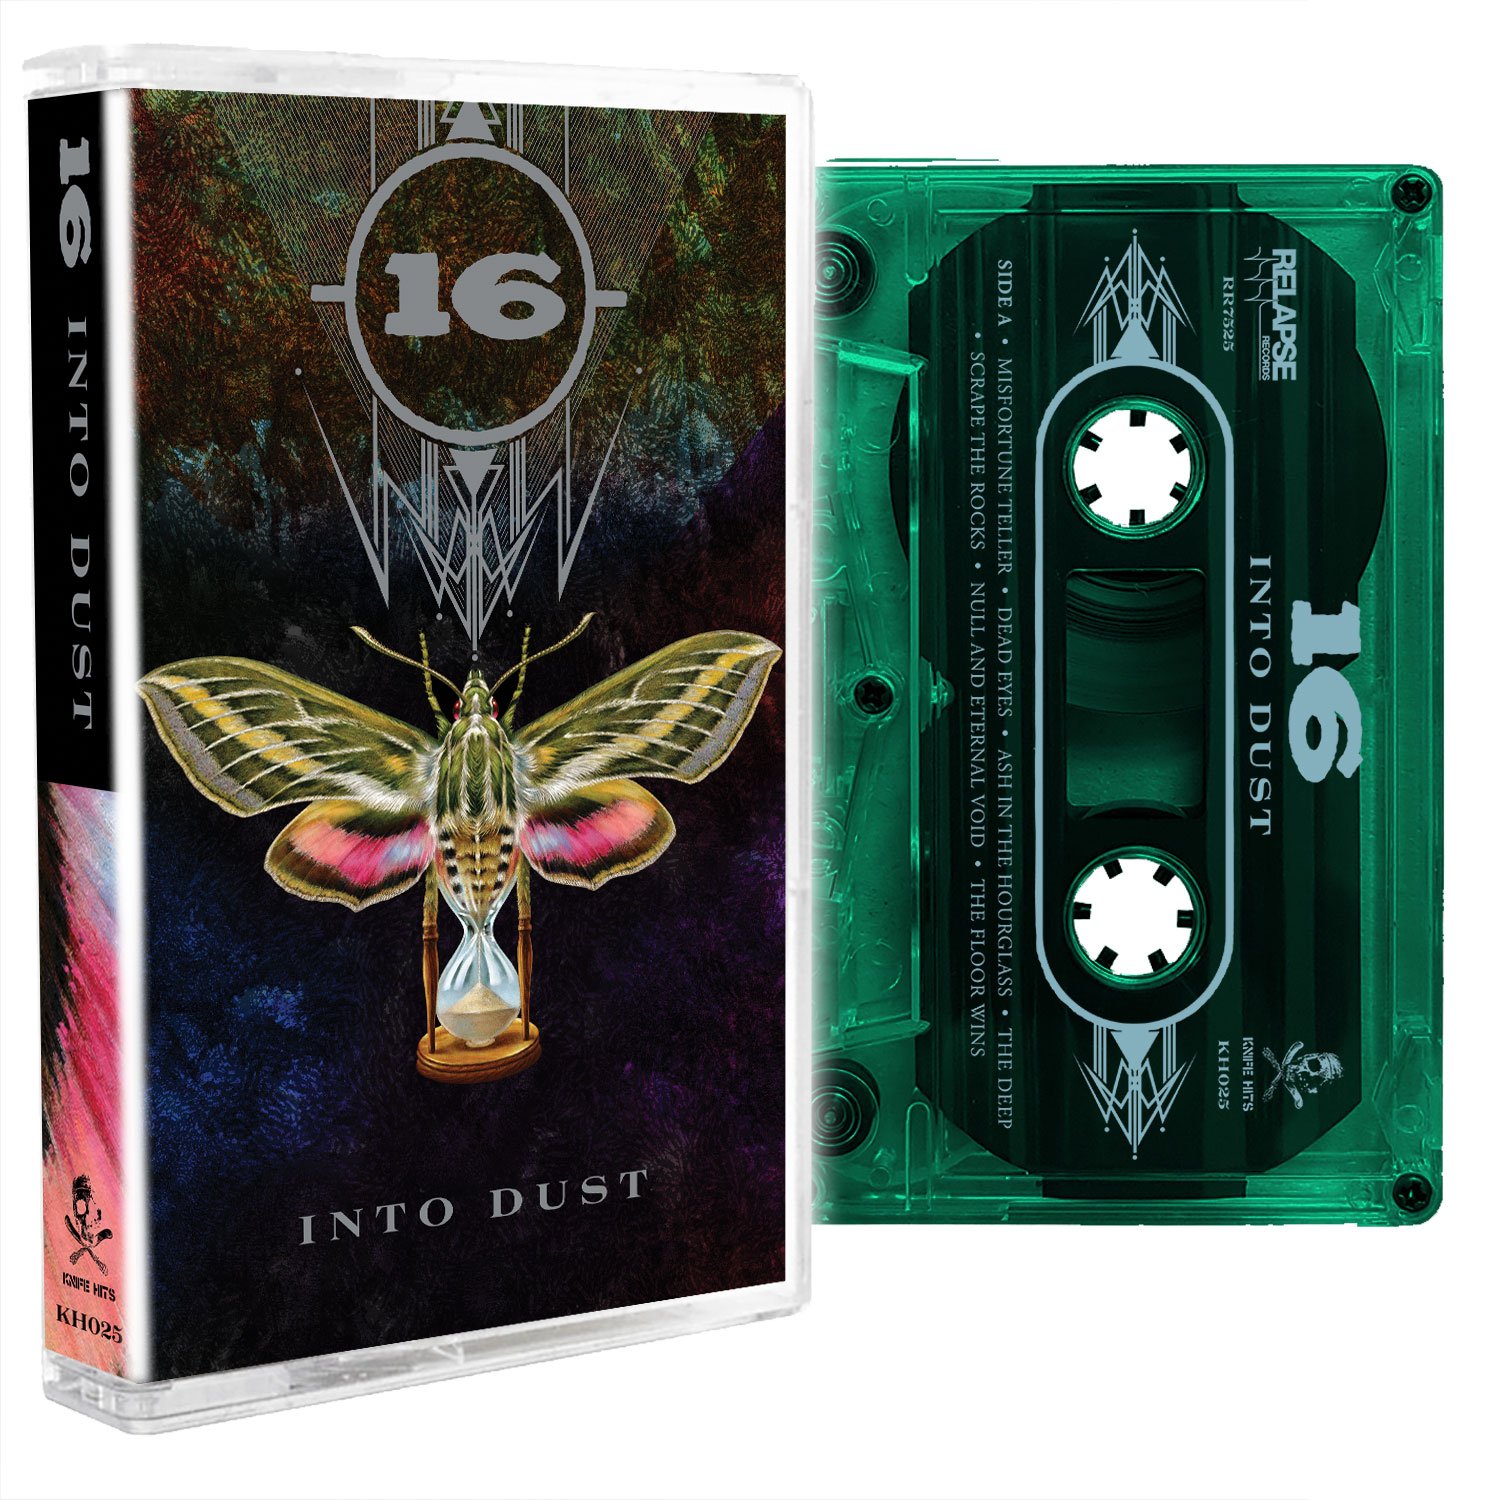 -(16)- Into Dust cassette